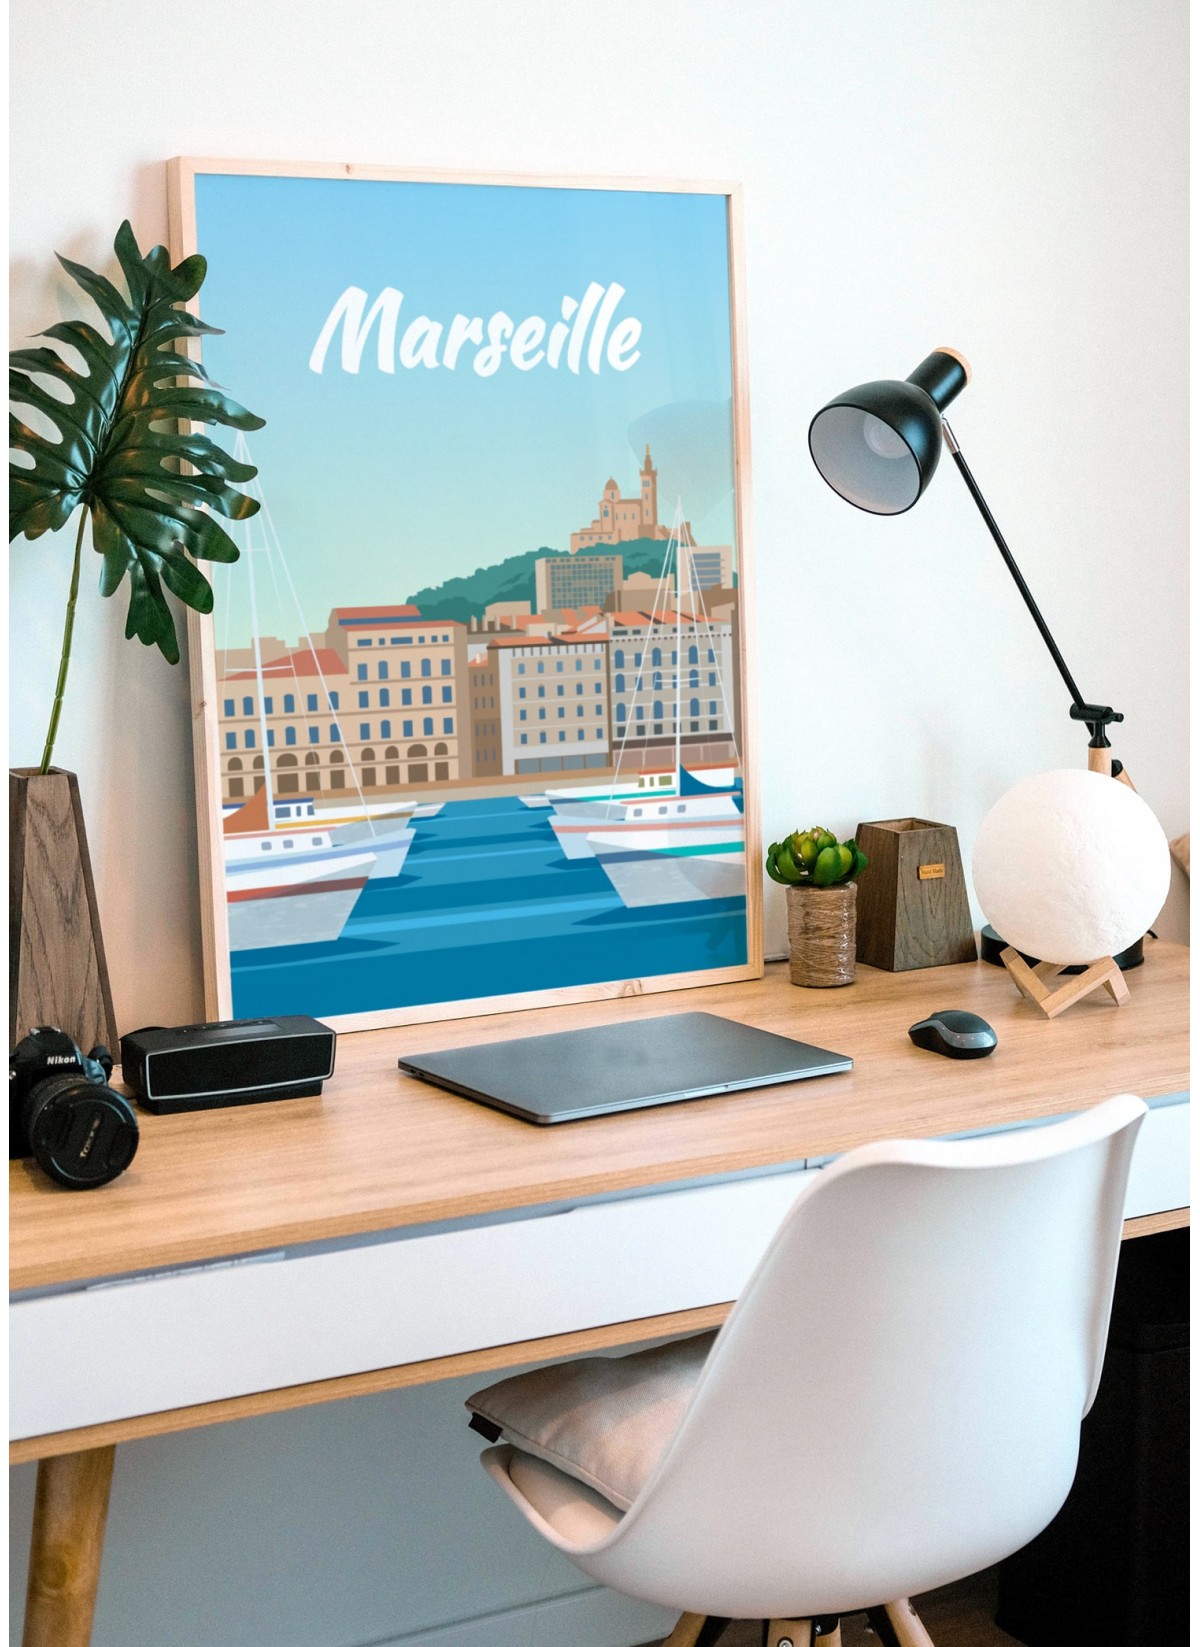 Travel poster Le Panier à Marseille, affiche régioanle encadrée